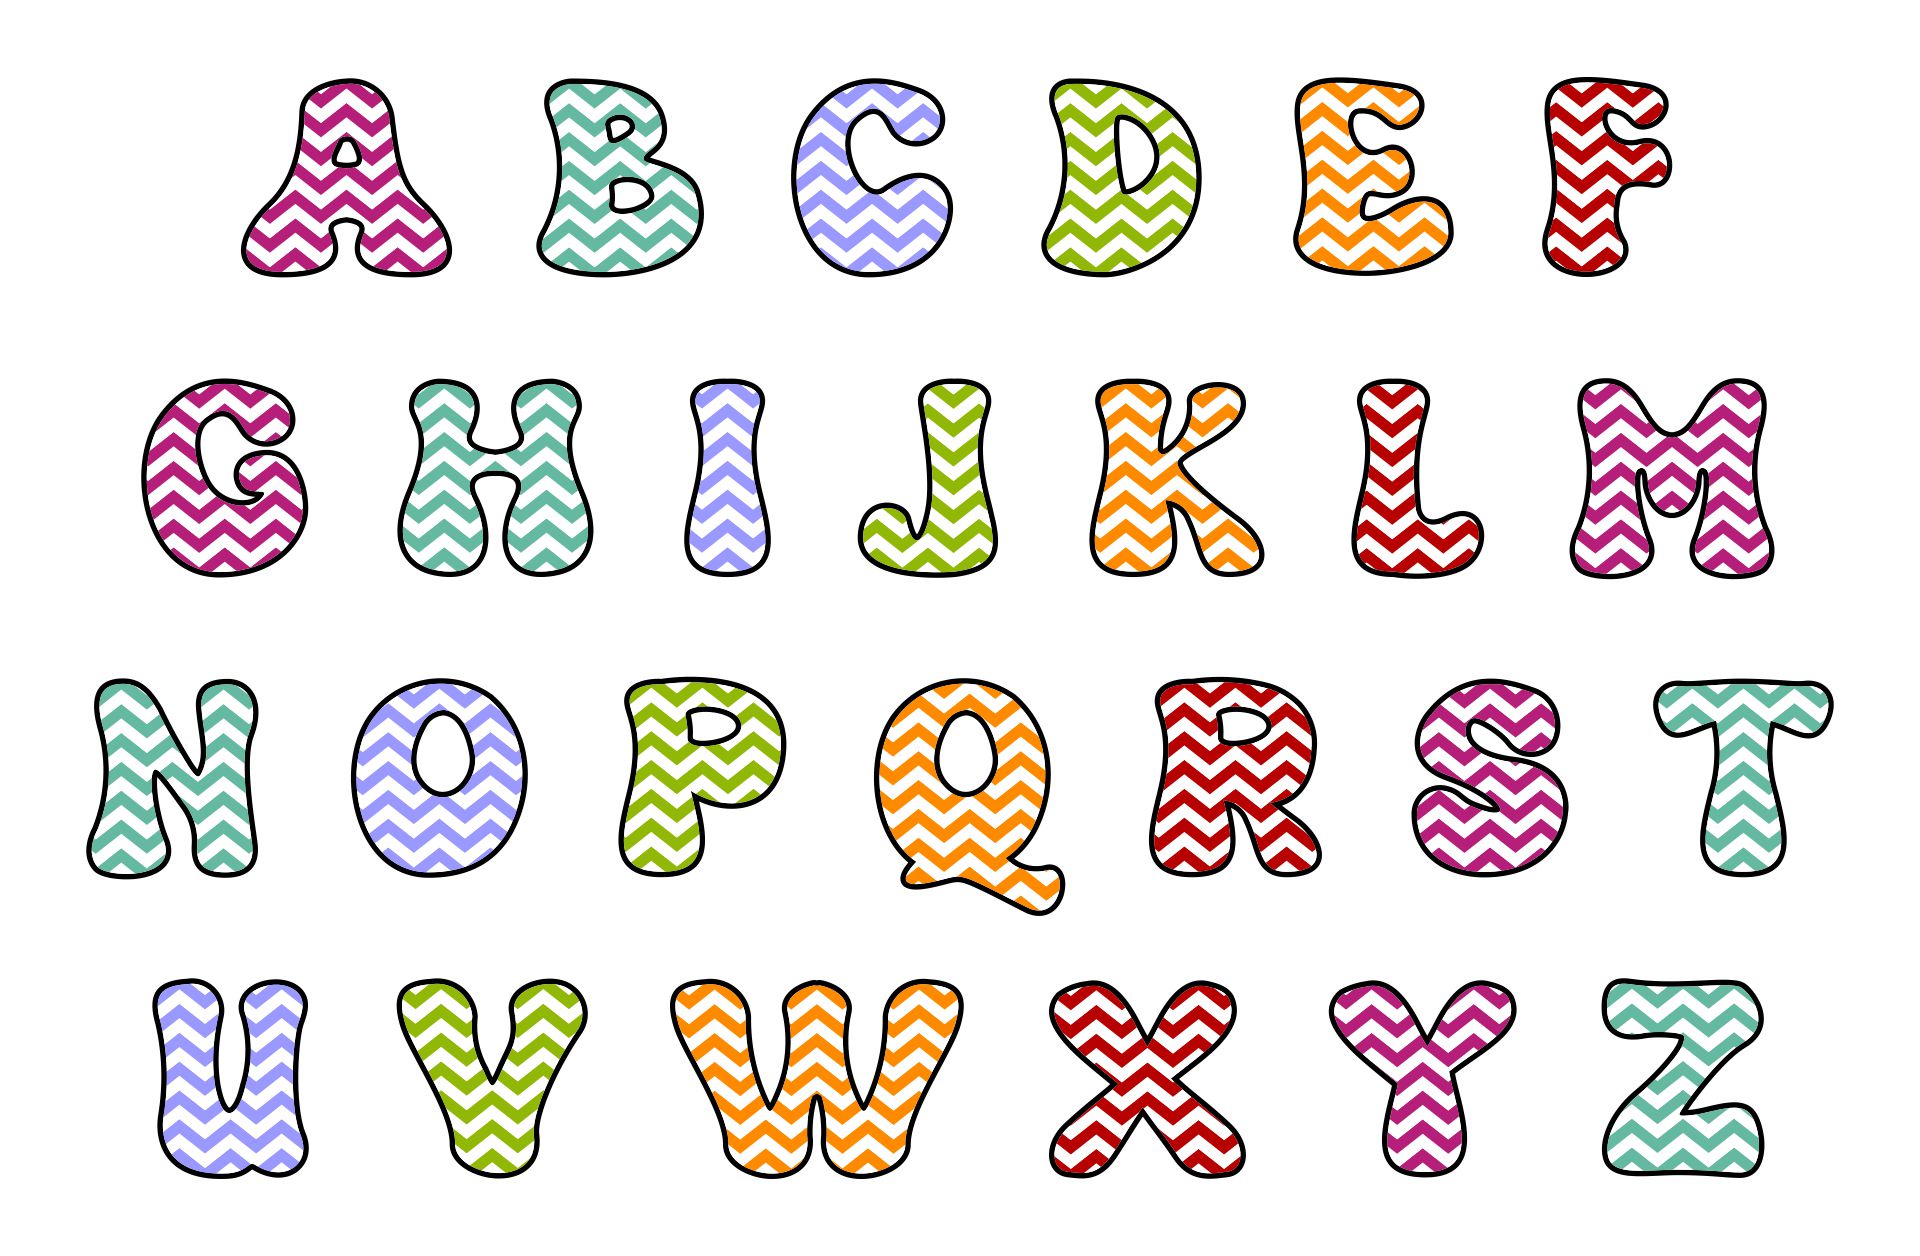 6 Best Images of Colored Printable Bubble Letter Font Bubble Letters